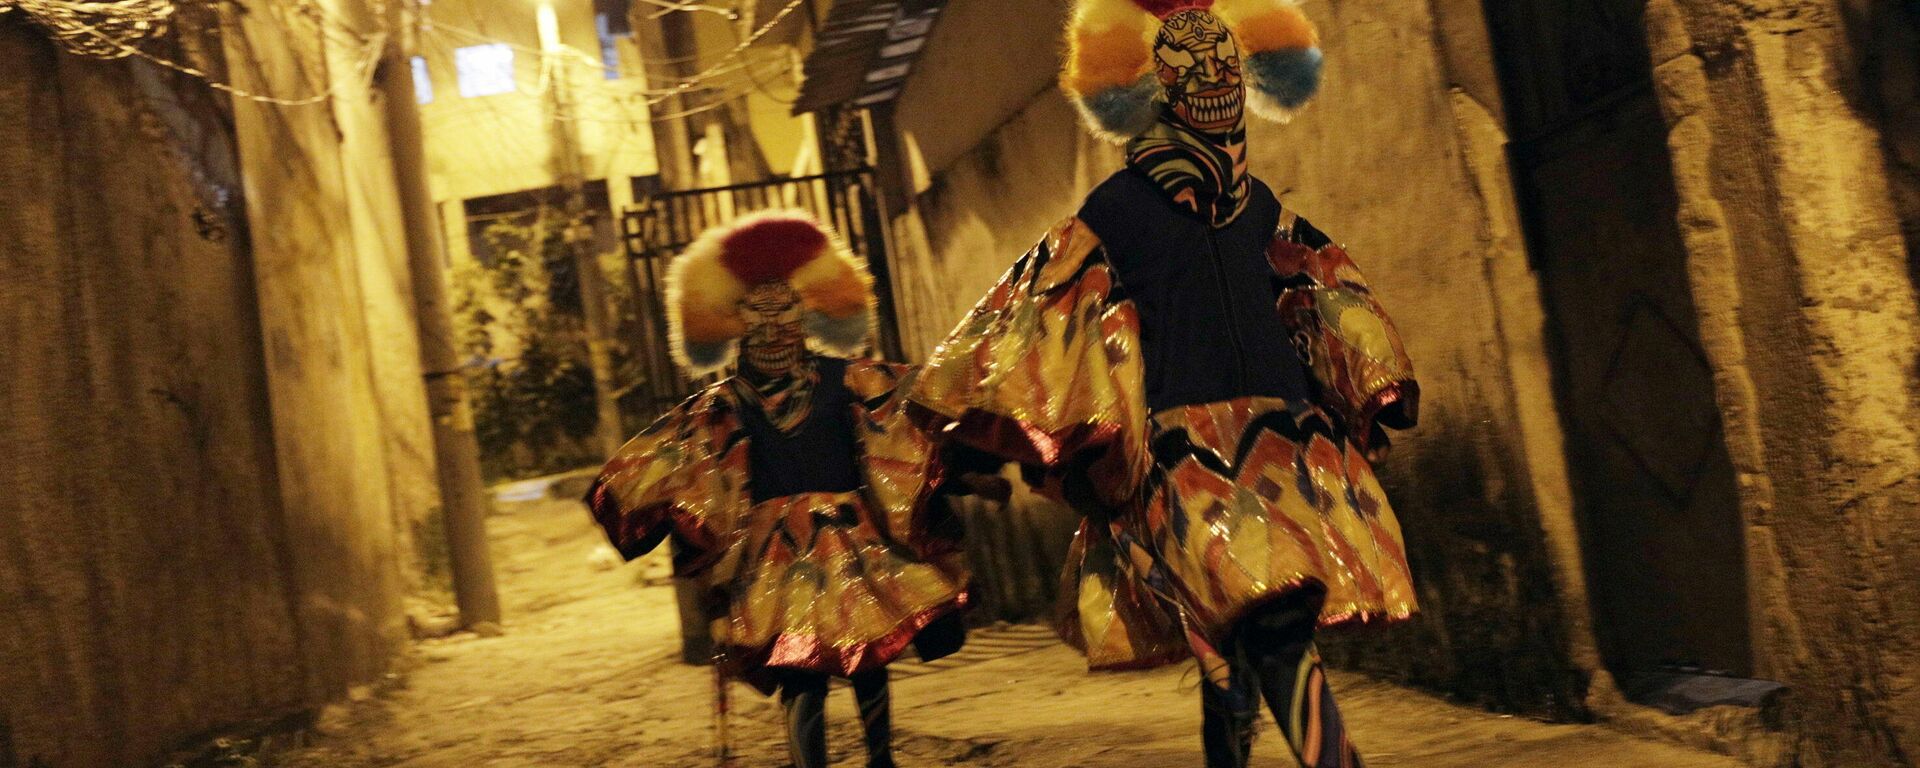 Carnaval Brasil - Sputnik Mundo, 1920, 14.06.2021